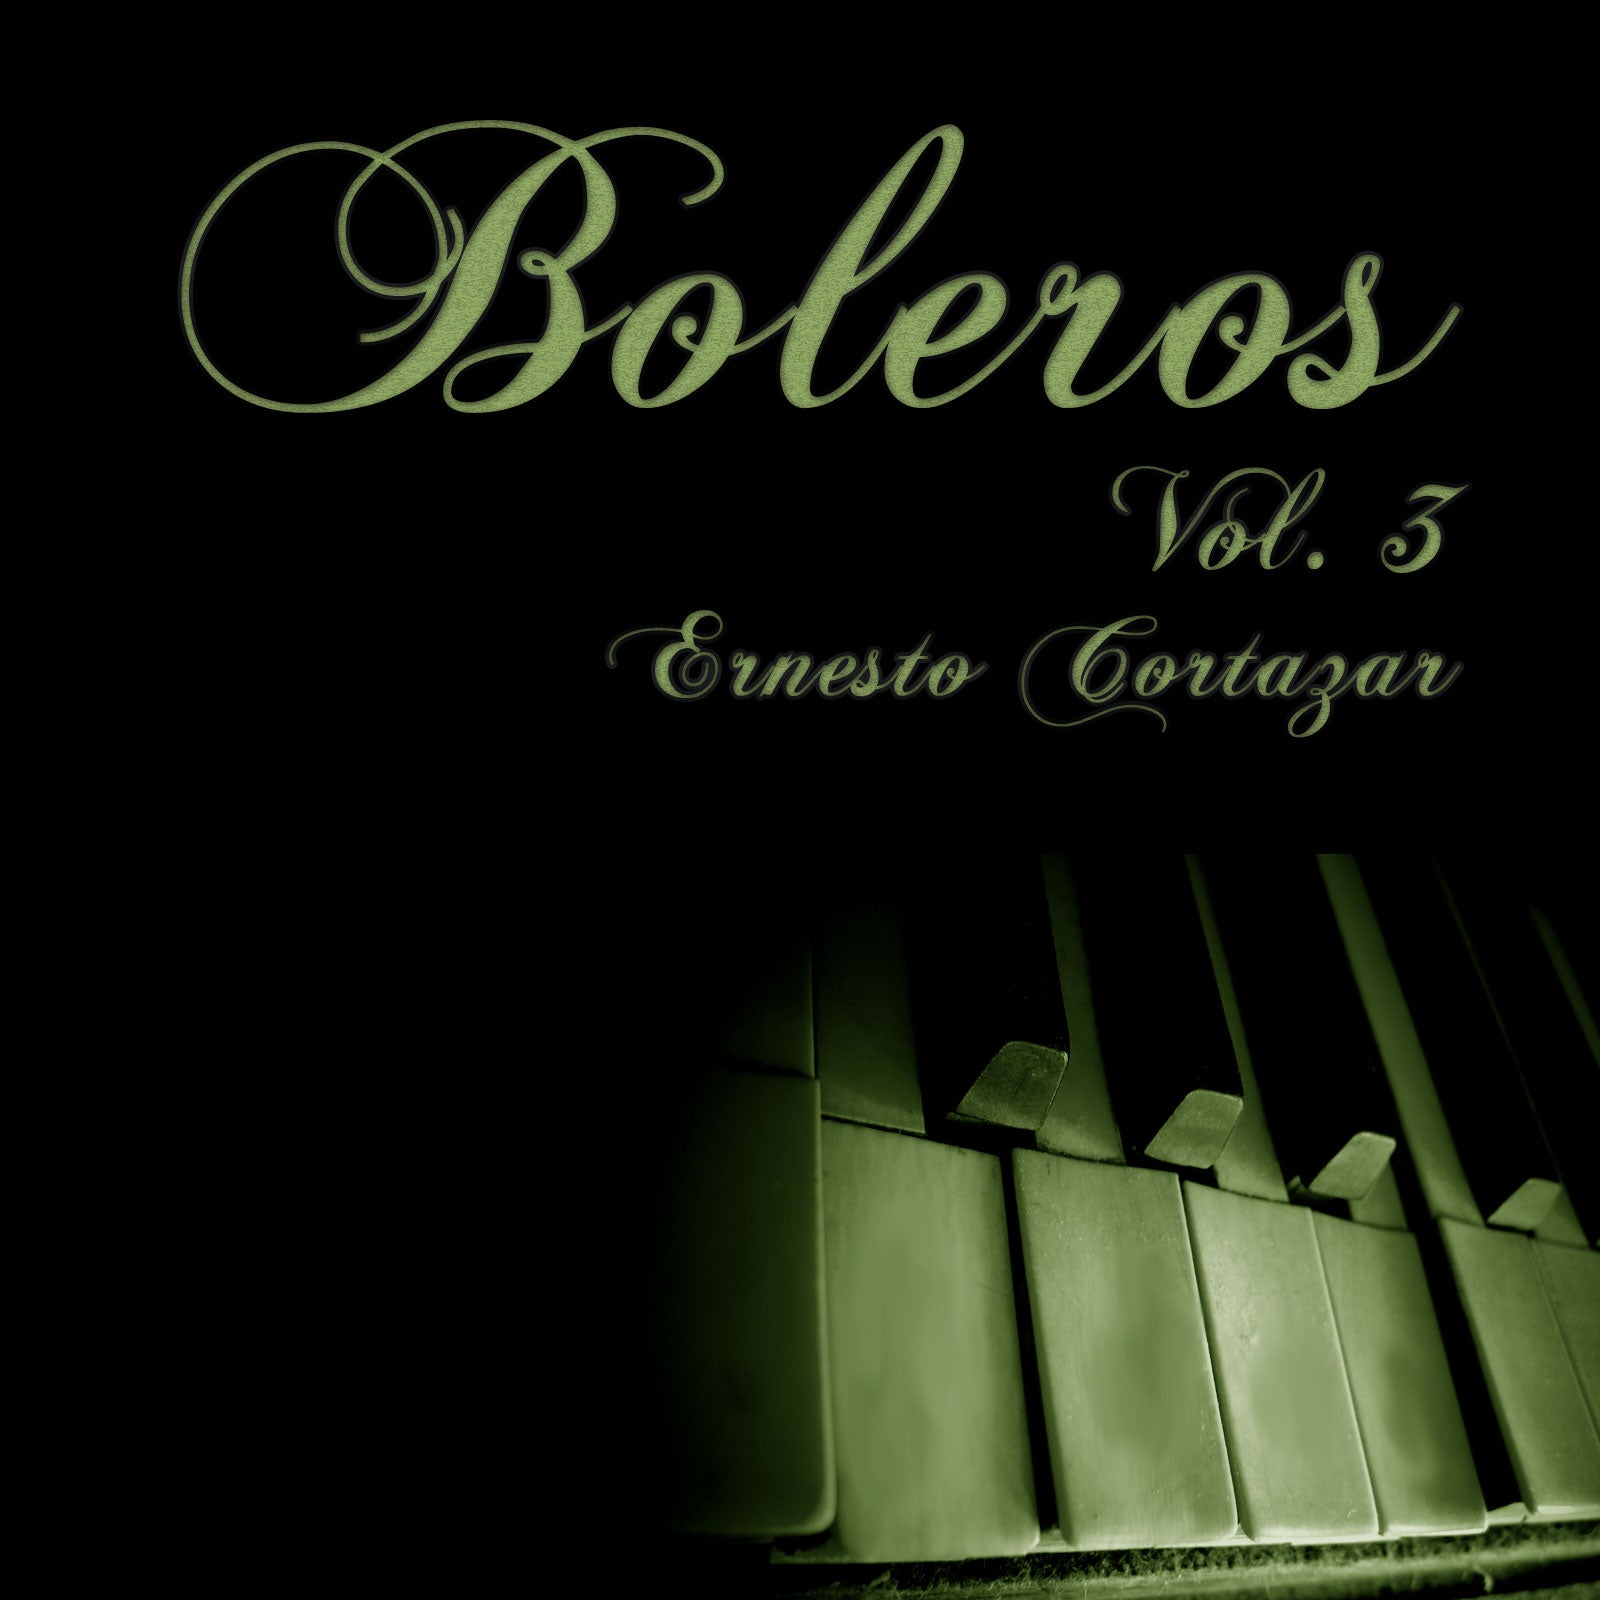 Boleros Vol. 3 MP3 Album Performed by Ernesto Cortazar